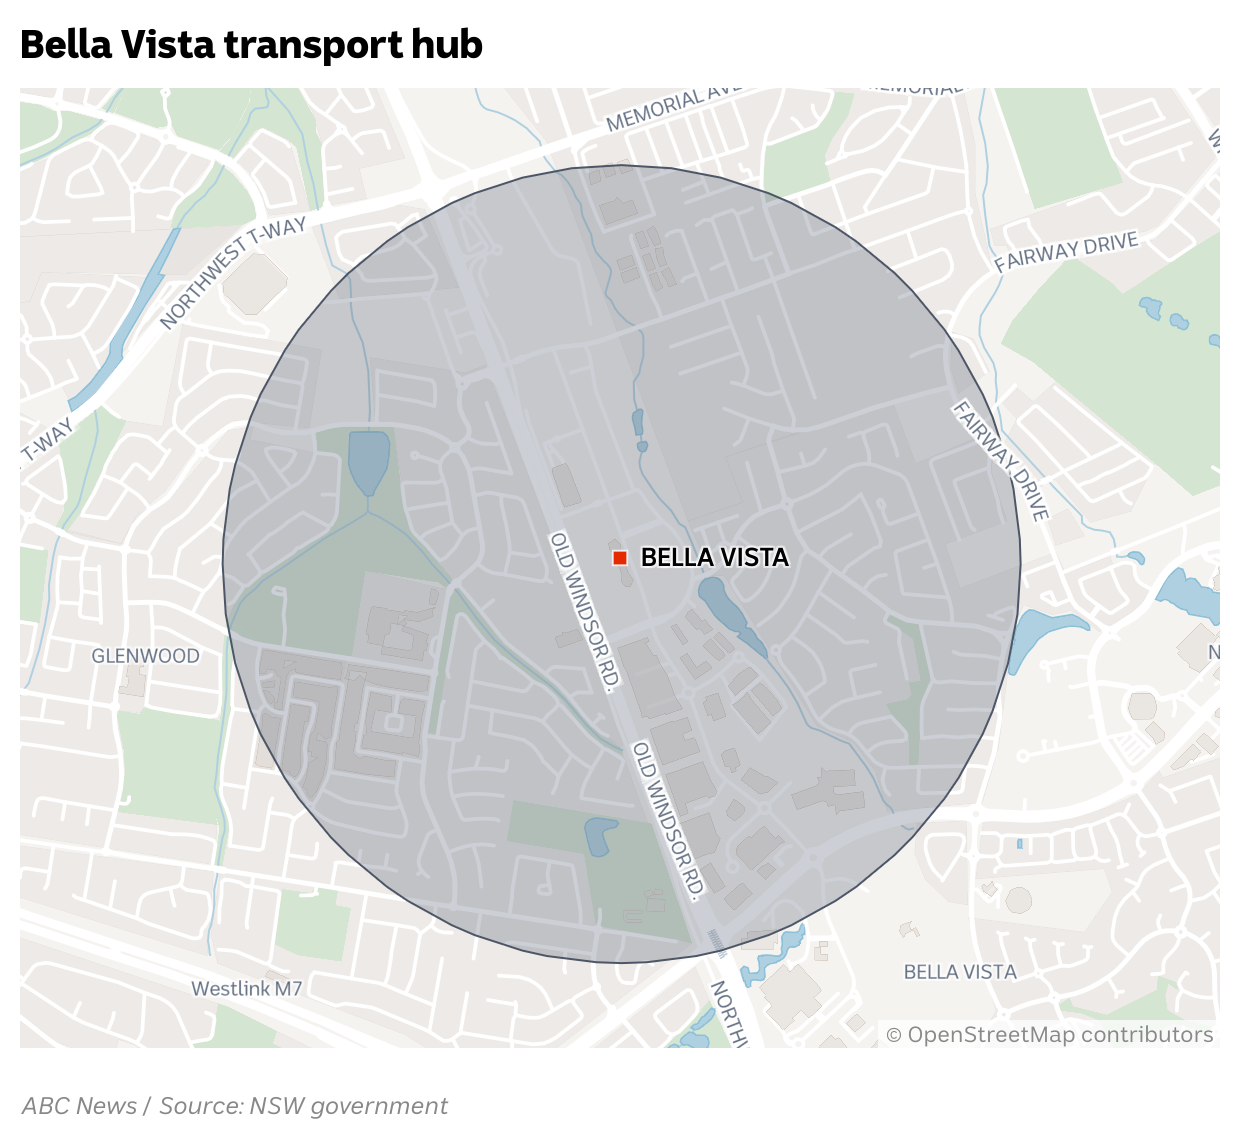 Map showing 1200m zone around Bella Vista station